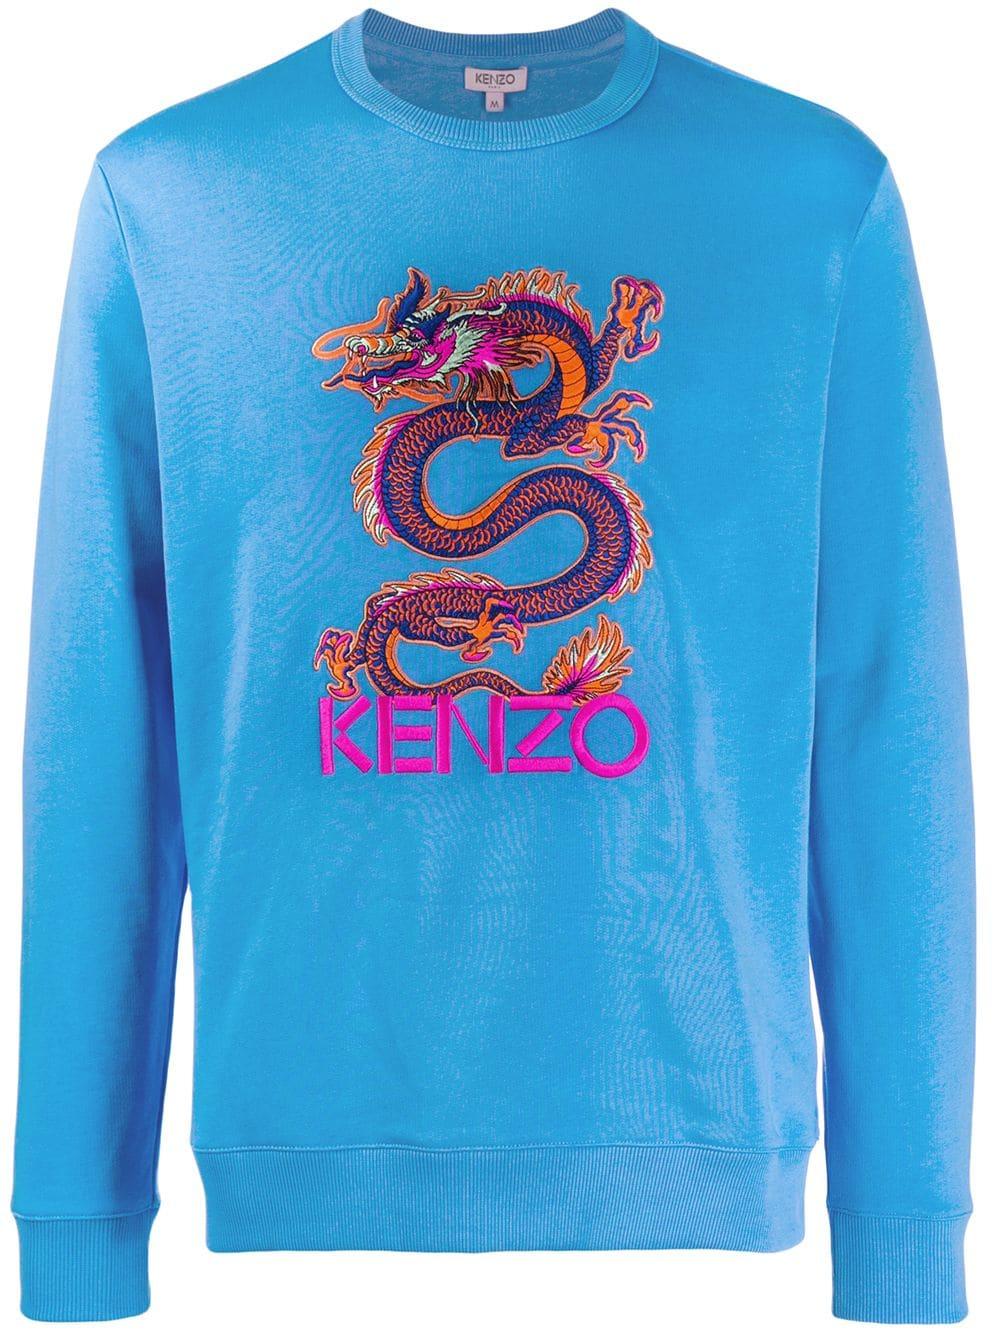 KENZO Cotton Dragon Sweatshirt in Blue for Men - Lyst